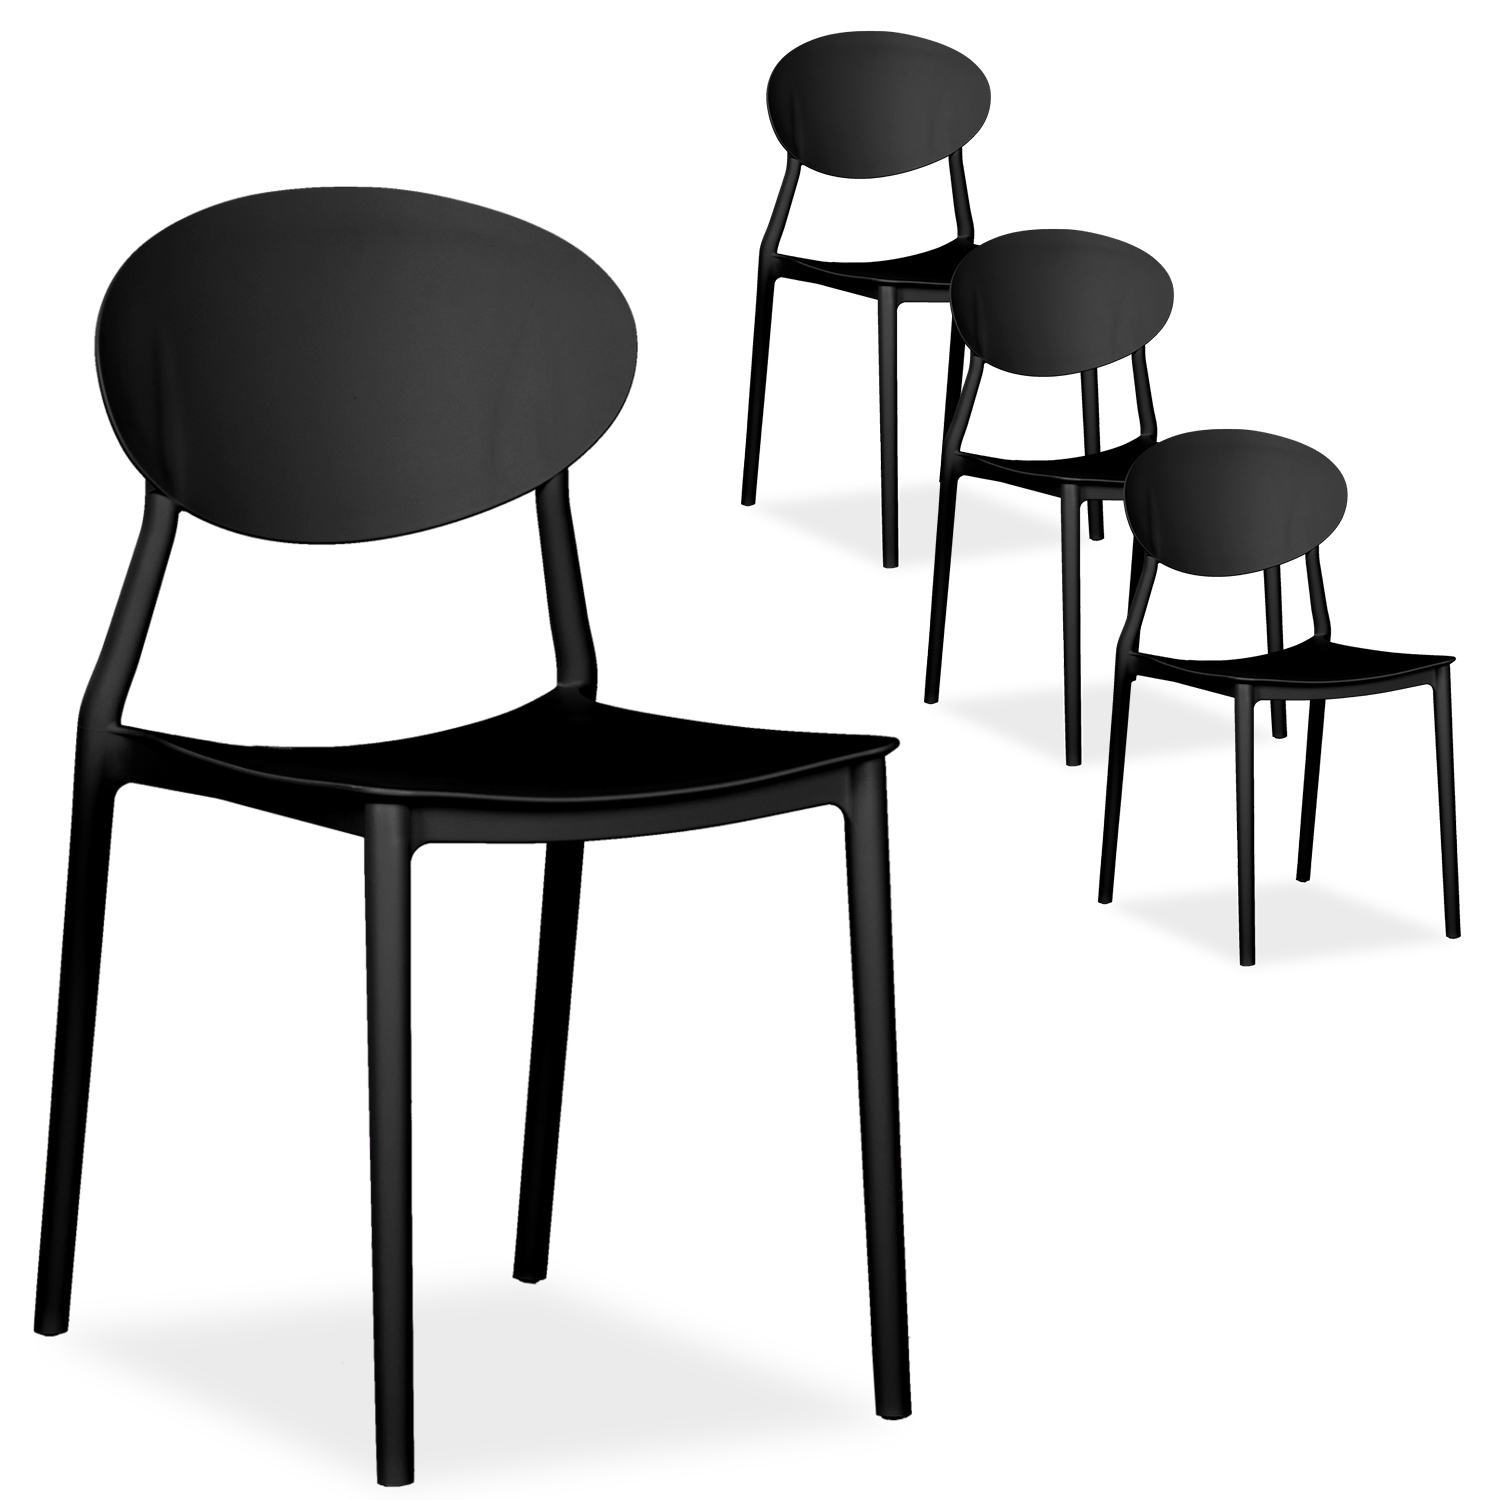 Gartenstuhl 4er Set in 5 Farben Stühle Küchenstühle Kunststoff Stapelstühle Balkonstuhl Outdoor-Stuhl